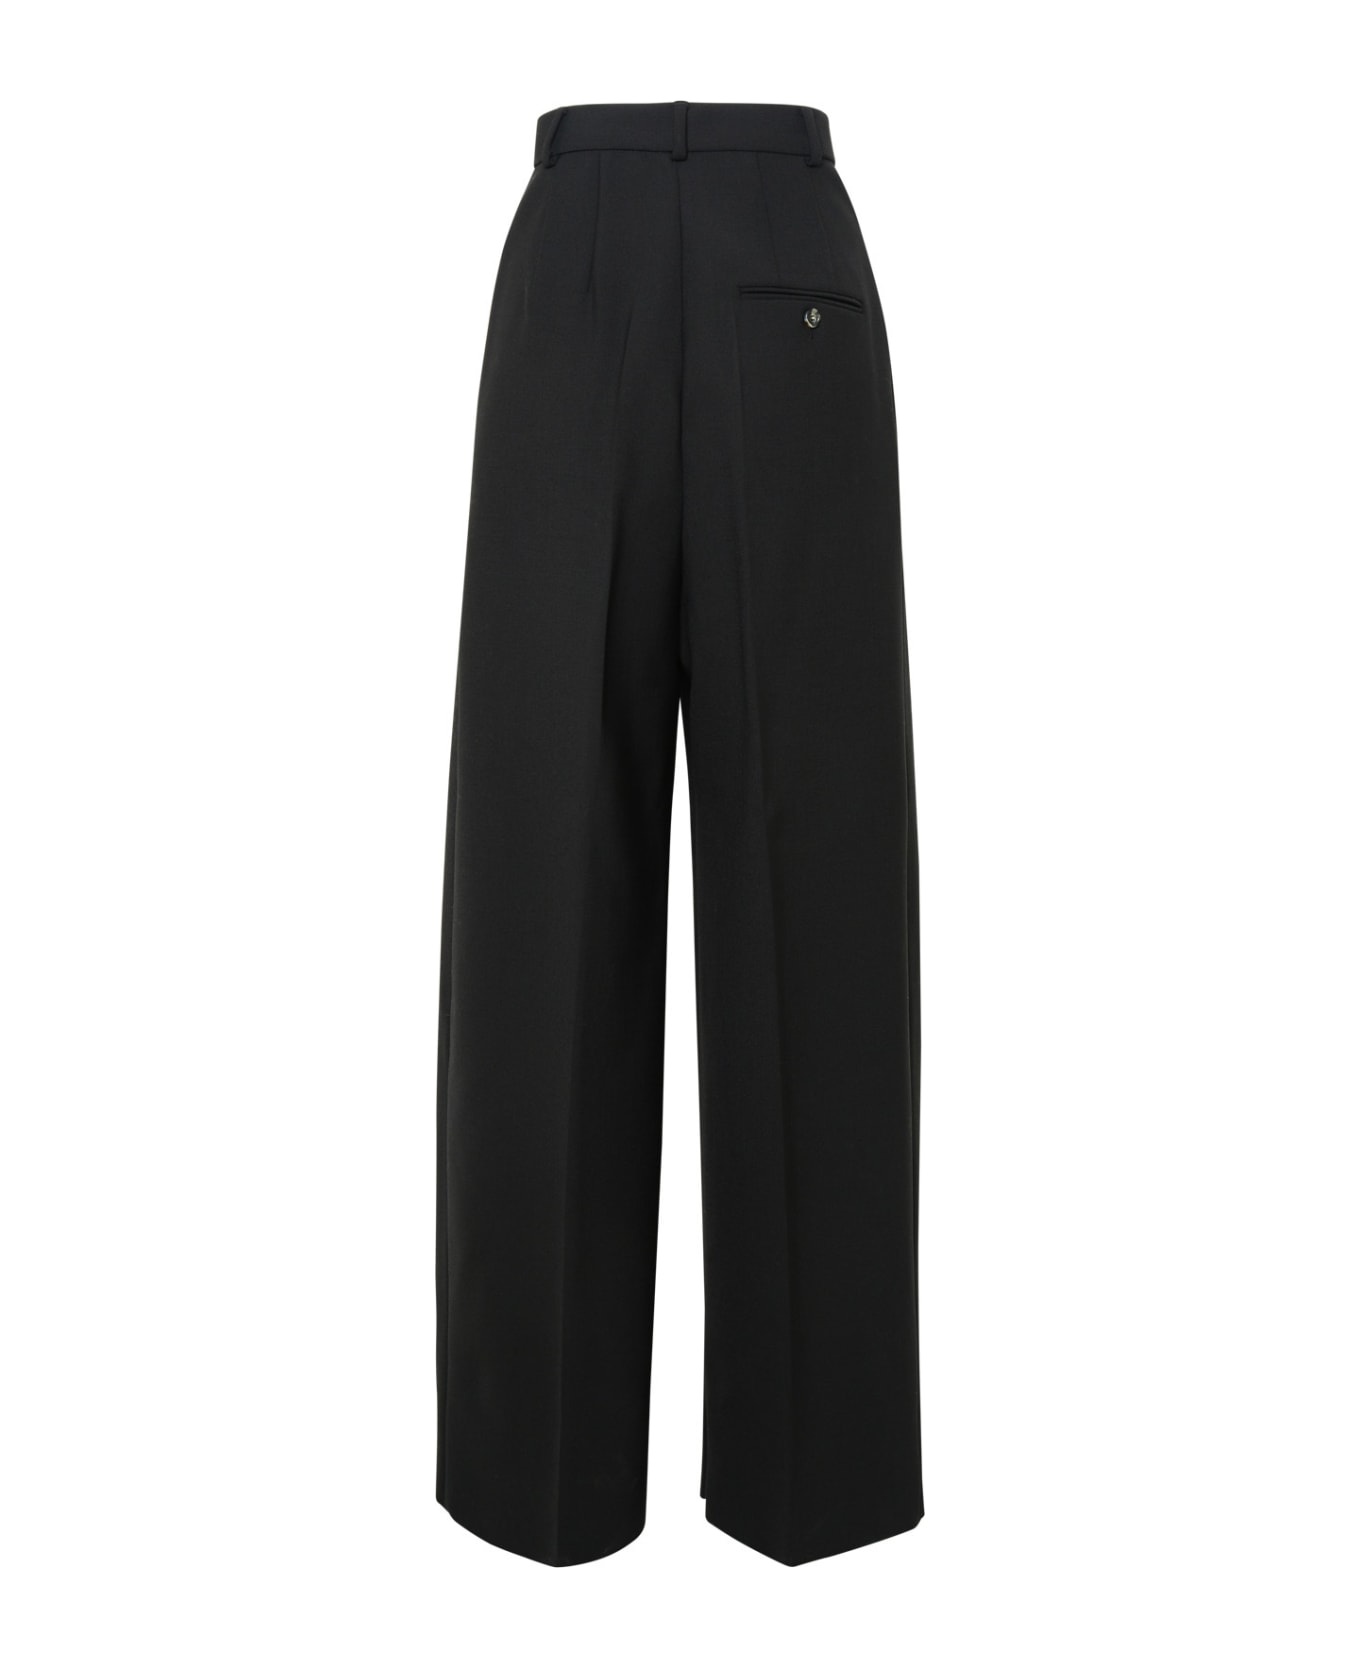 SportMax Enro 'gessati' Virgin Wool Blend Pants - Black